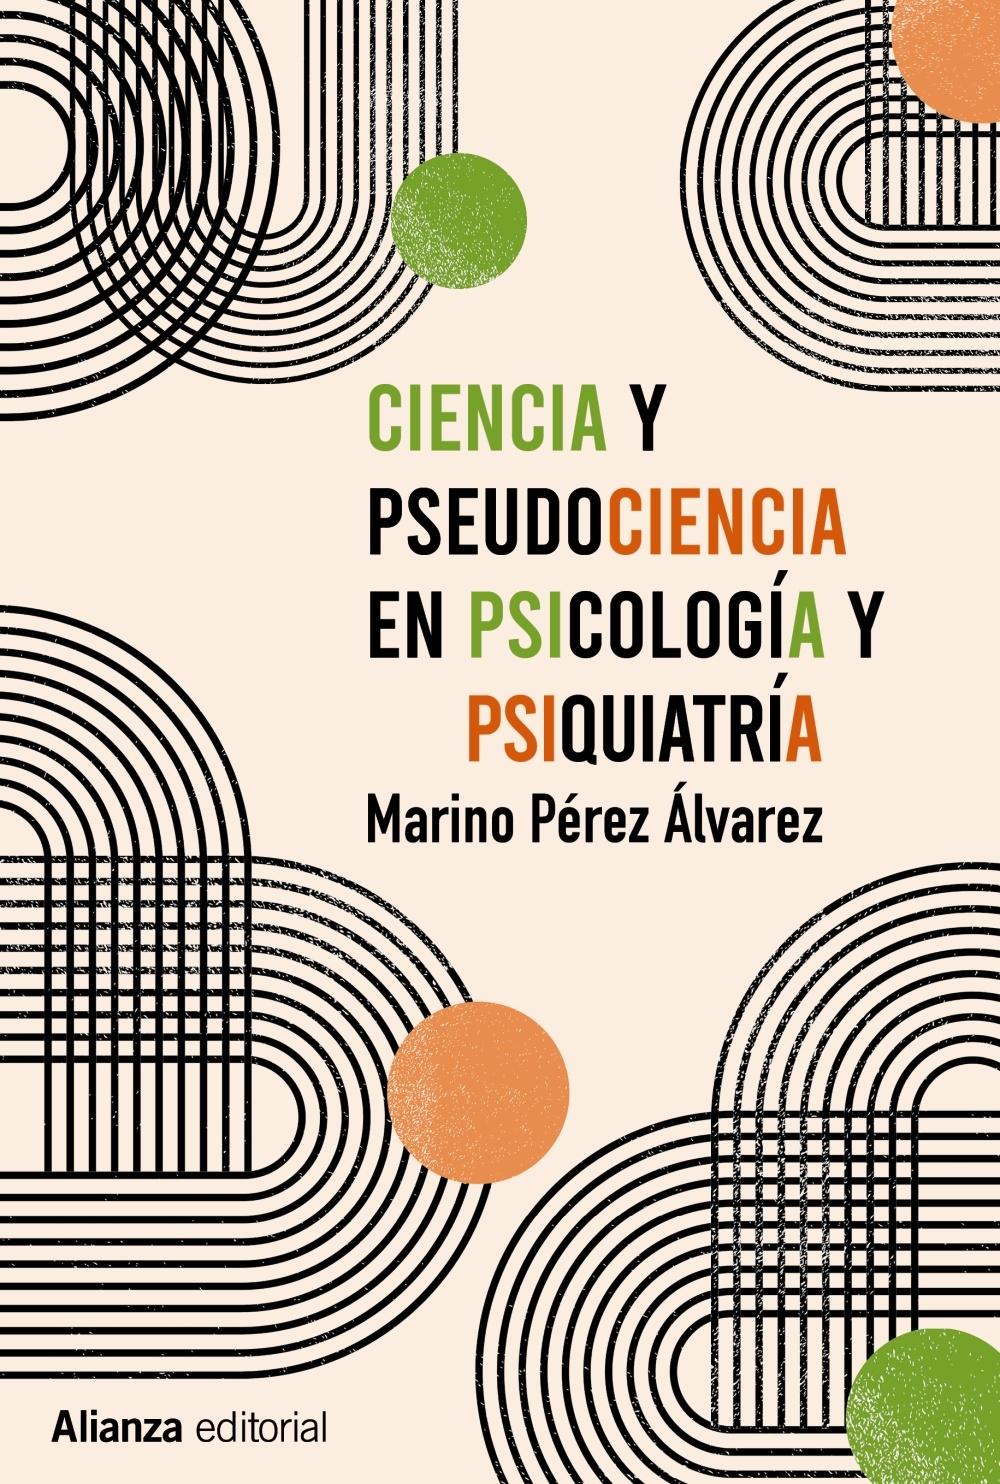 Ciencia y pseudociencia en psicología y psiquiatría "Más allá de la corriente principal". 